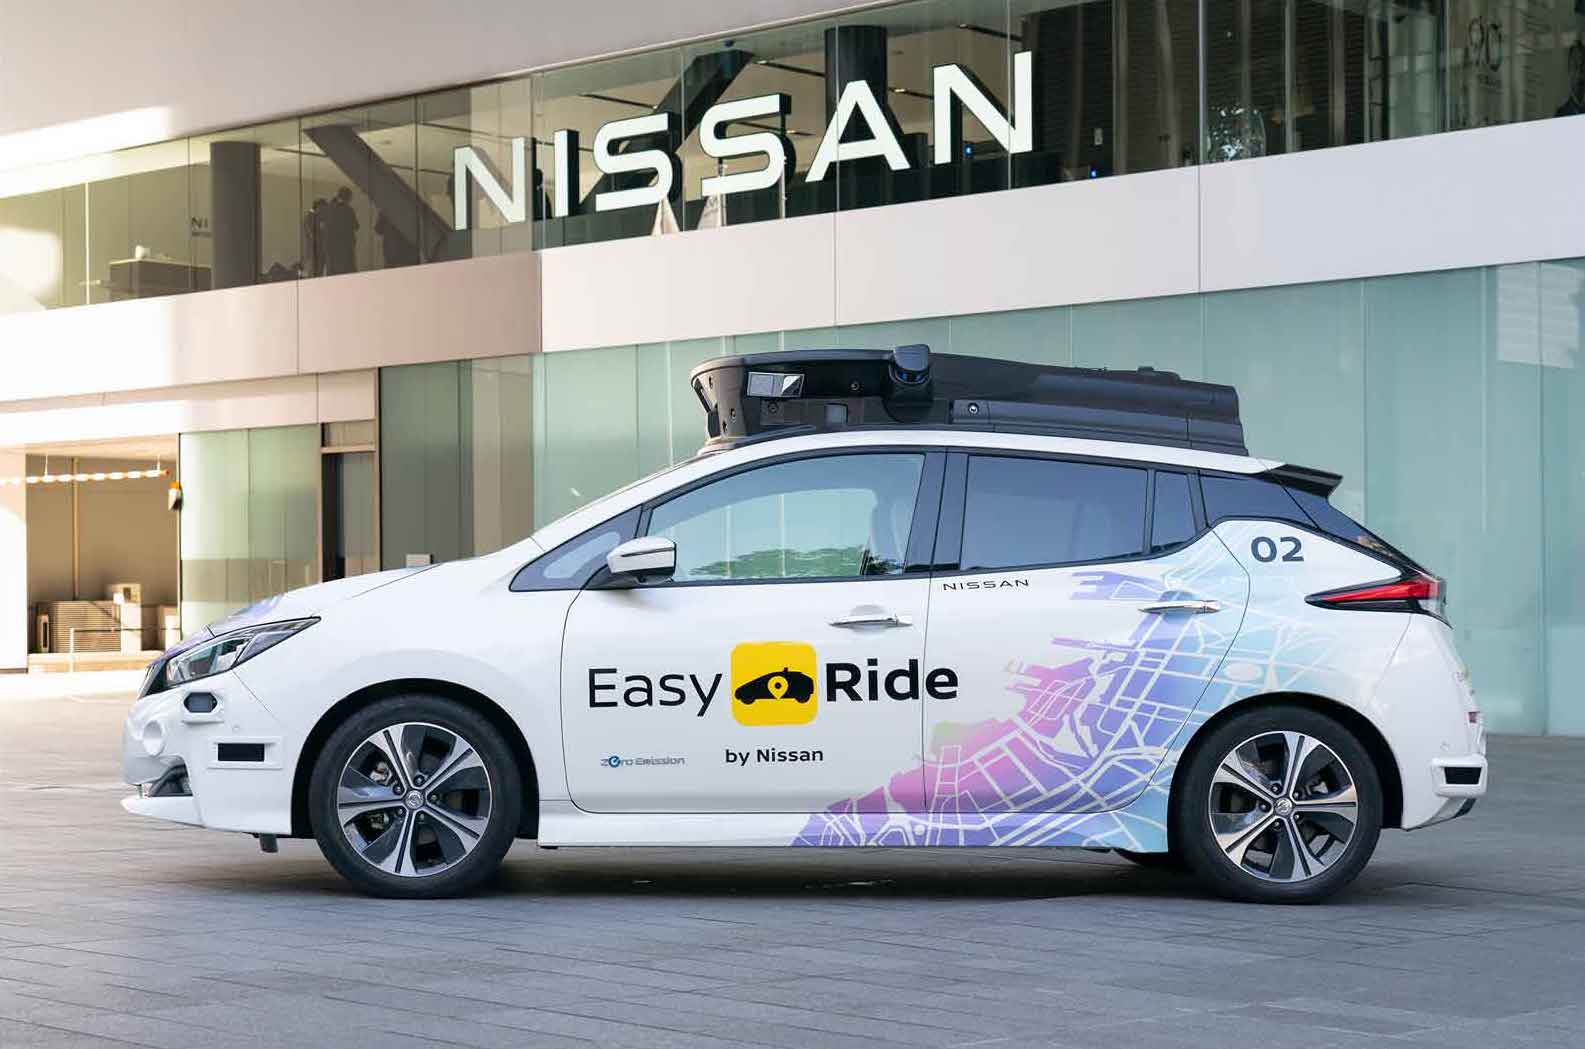 日産とディー・エヌ・エー（DeNA）が共同開発した無人運転車両を活用した交通サービス「Easy Ride」のロゴがプリントされています